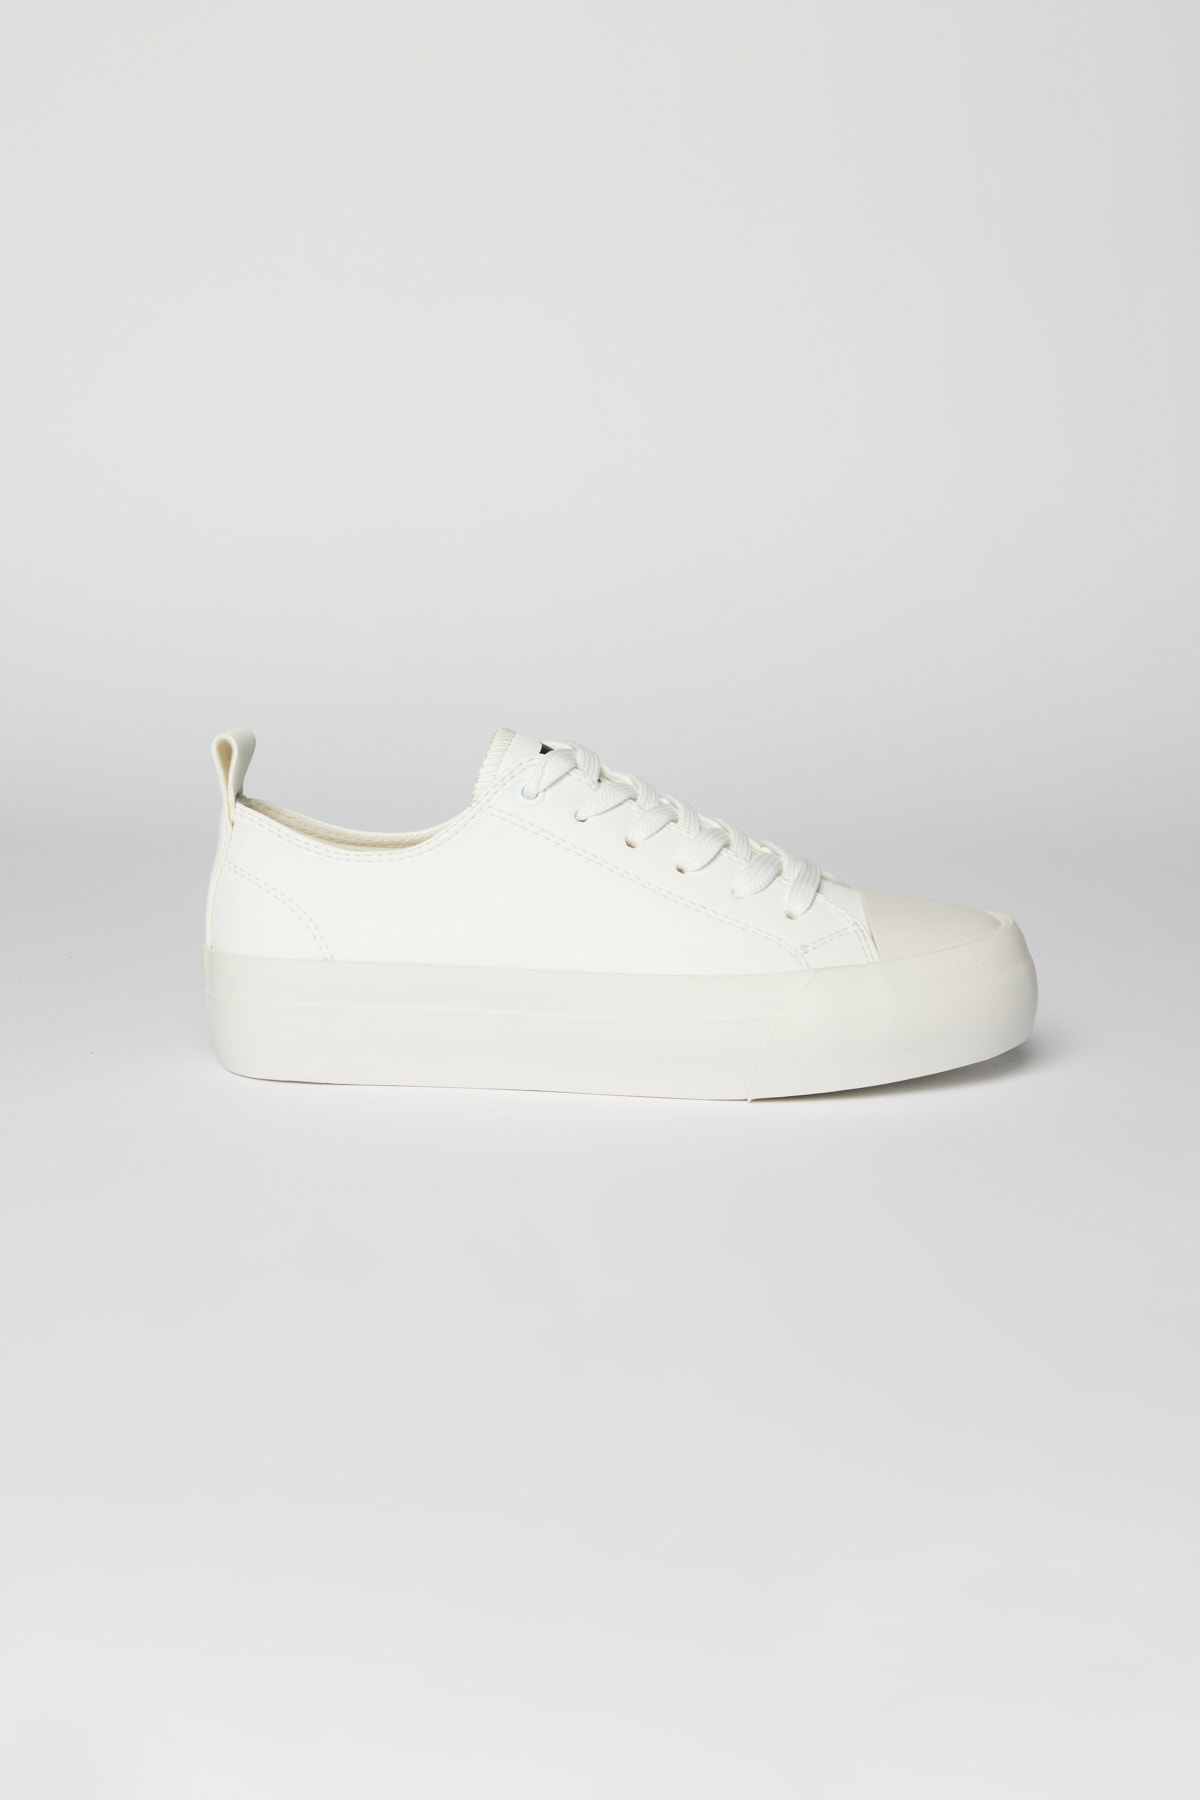 AC&Co / Altınyıldız Classics Men's White Laced Flexible Comfortable Sole Patternless Sneaker Shoes